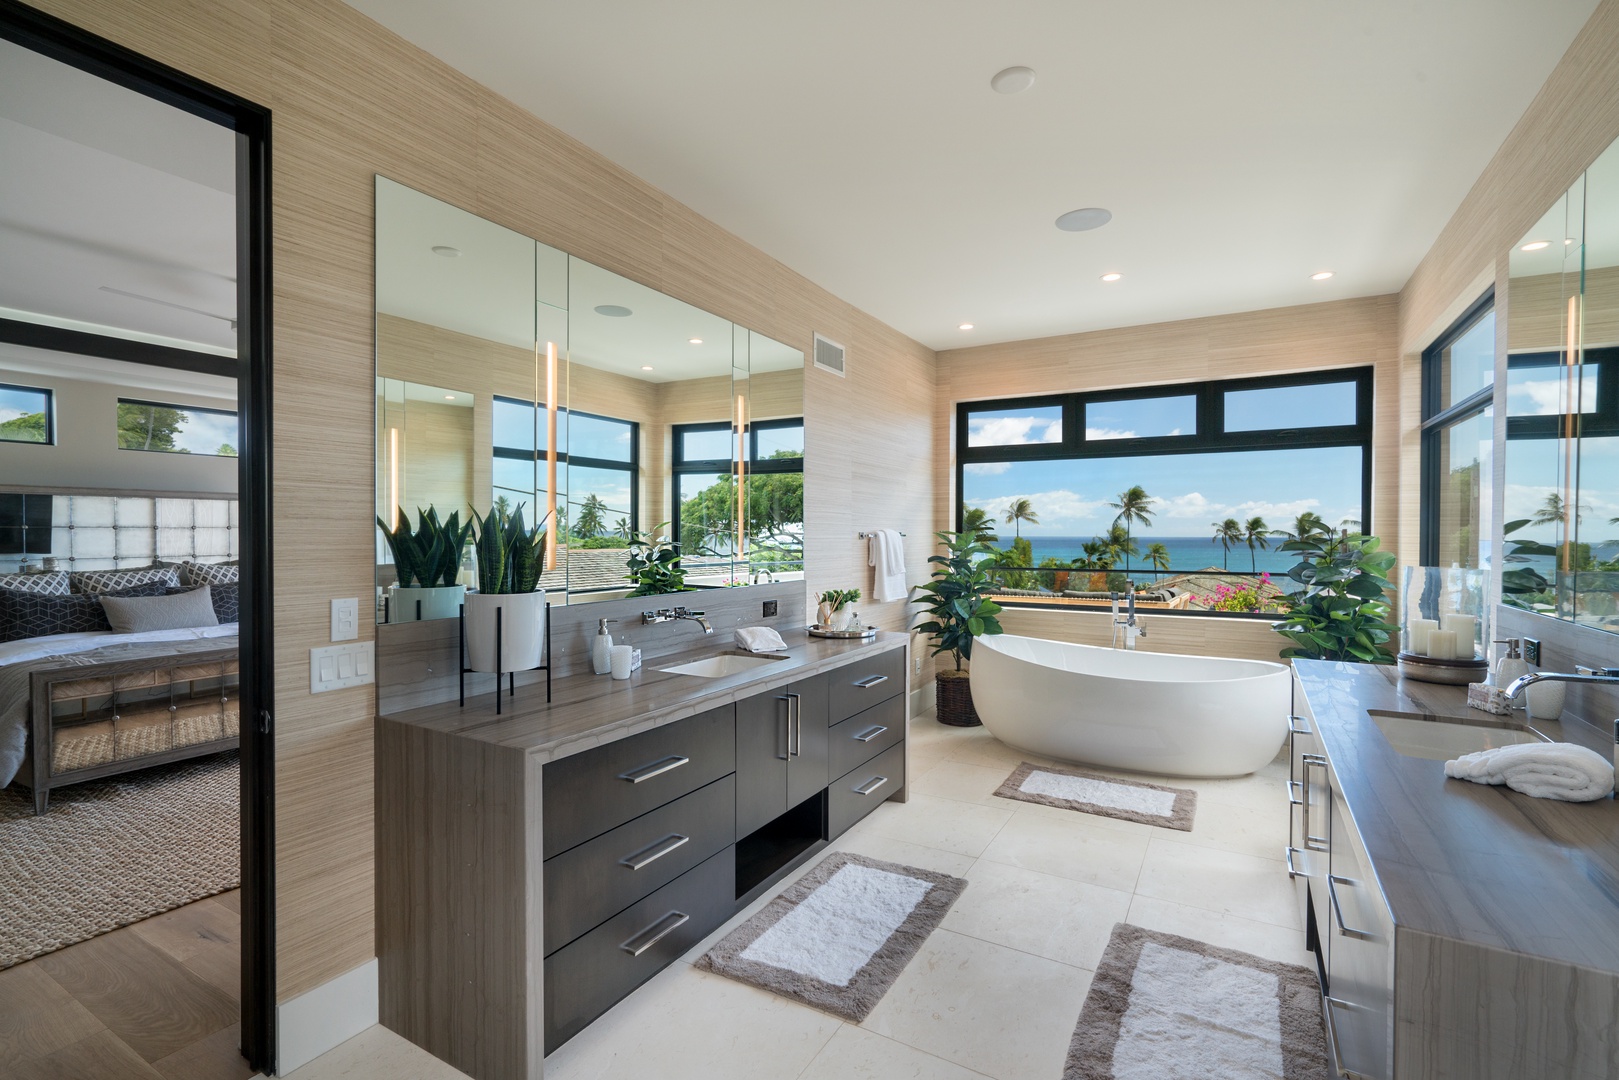 Honolulu Vacation Rentals, Diamond Head Grandeur - Primary Bedroom ensuite with large vanity and soaking tub with ocean views